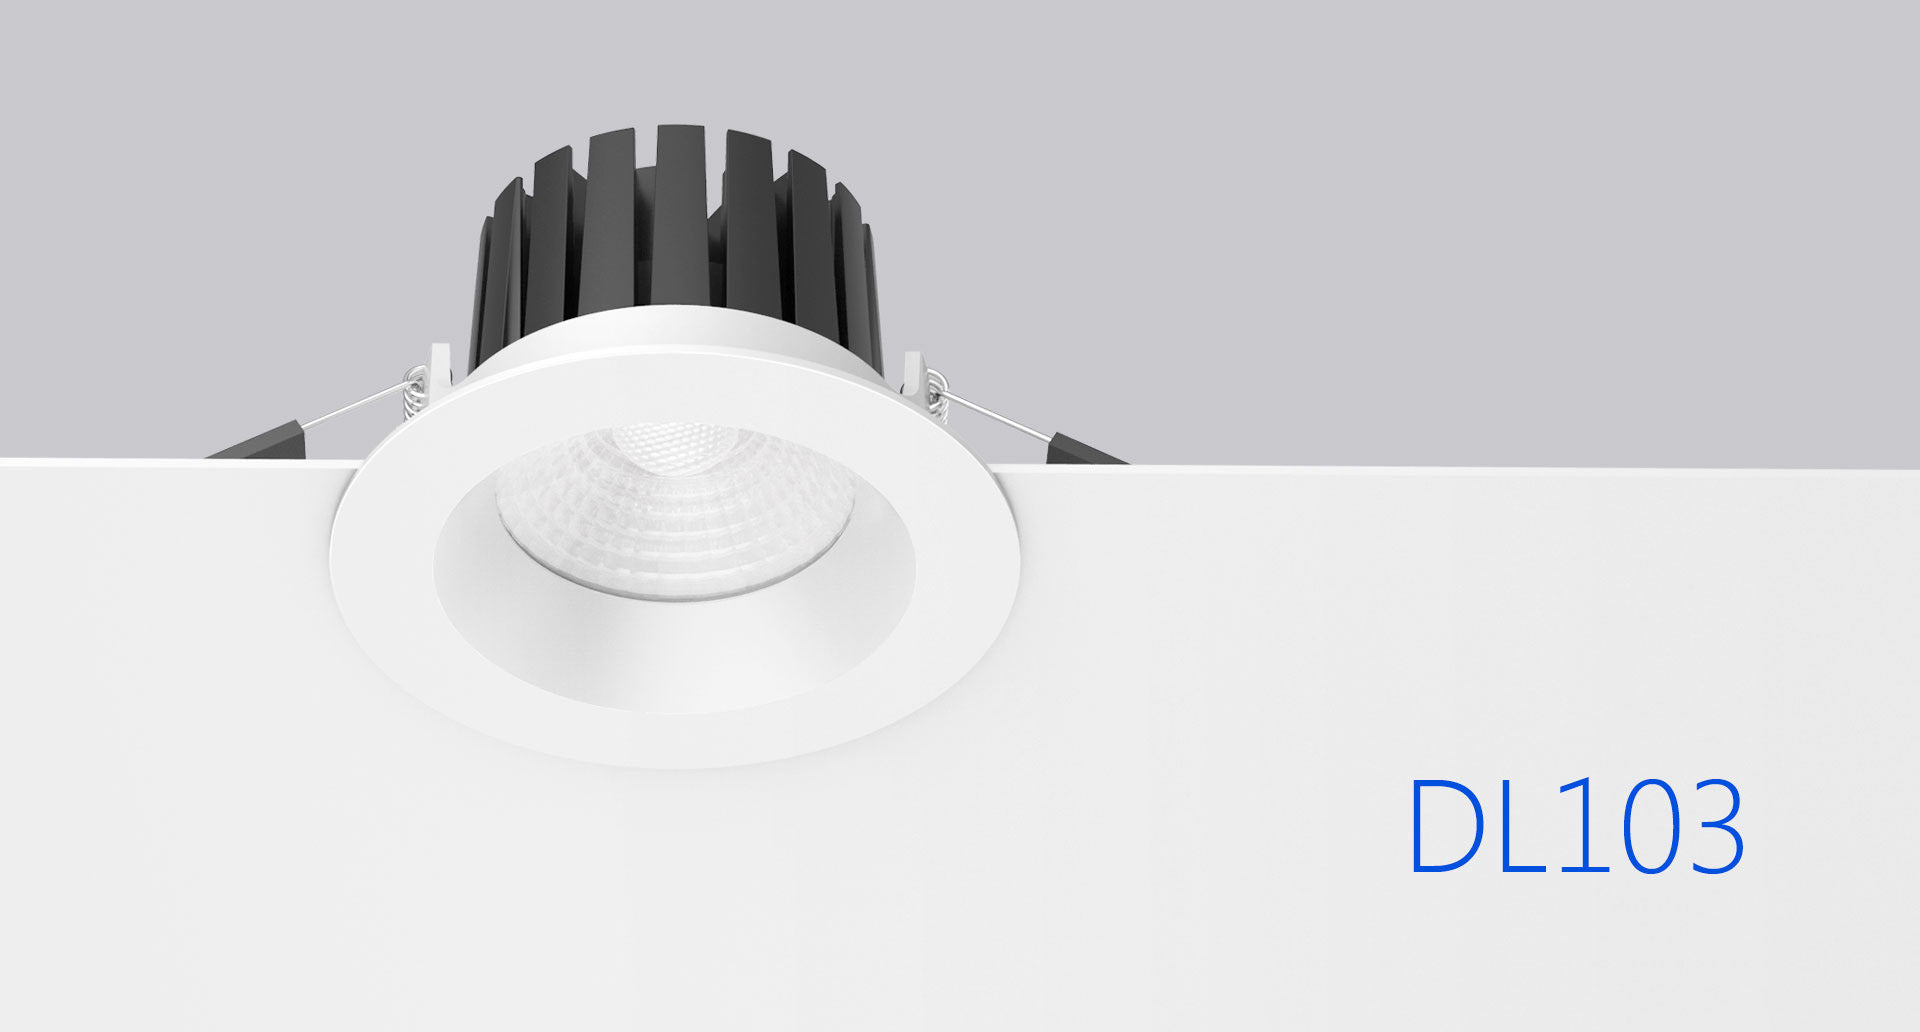 โคมไฟ LED Downlight รุ่น DL103 แบรนด์ BOX BRIGHT